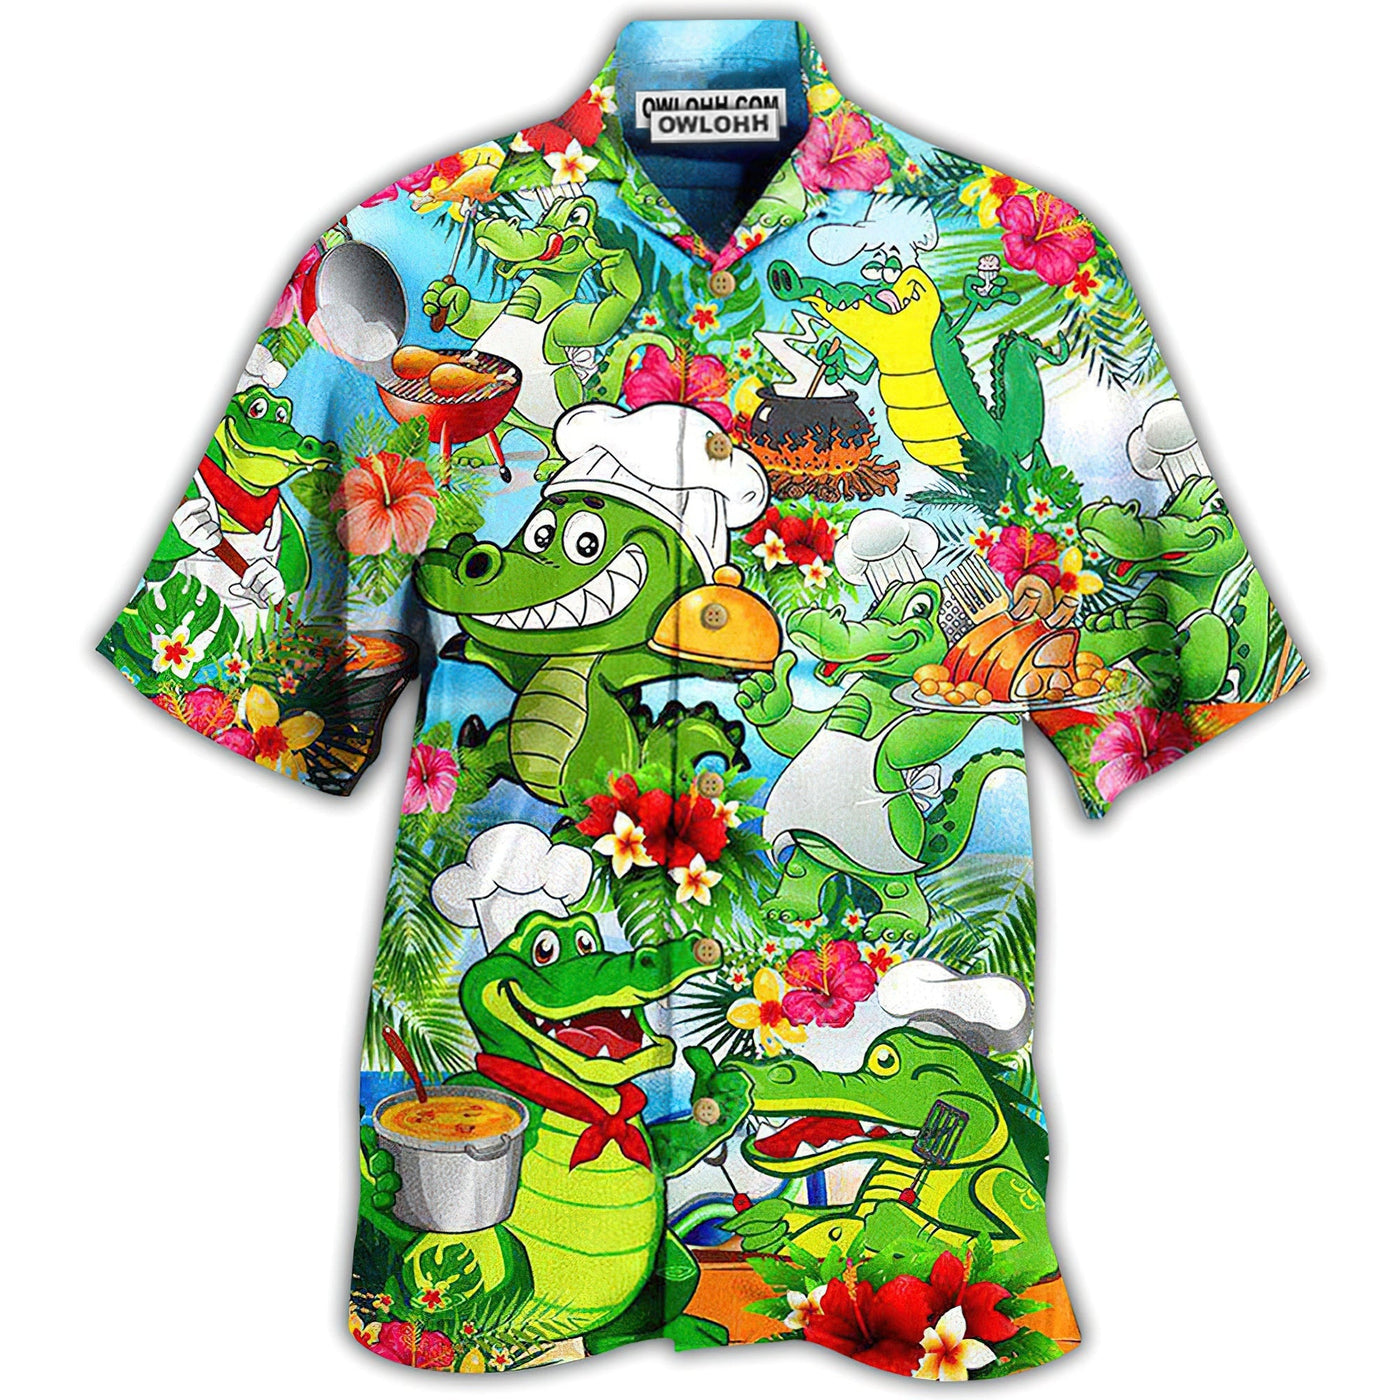 Hawaiian Shirt / Adults / S Chef Animals Alligator - Hawaiian Shirt - Owls Matrix LTD